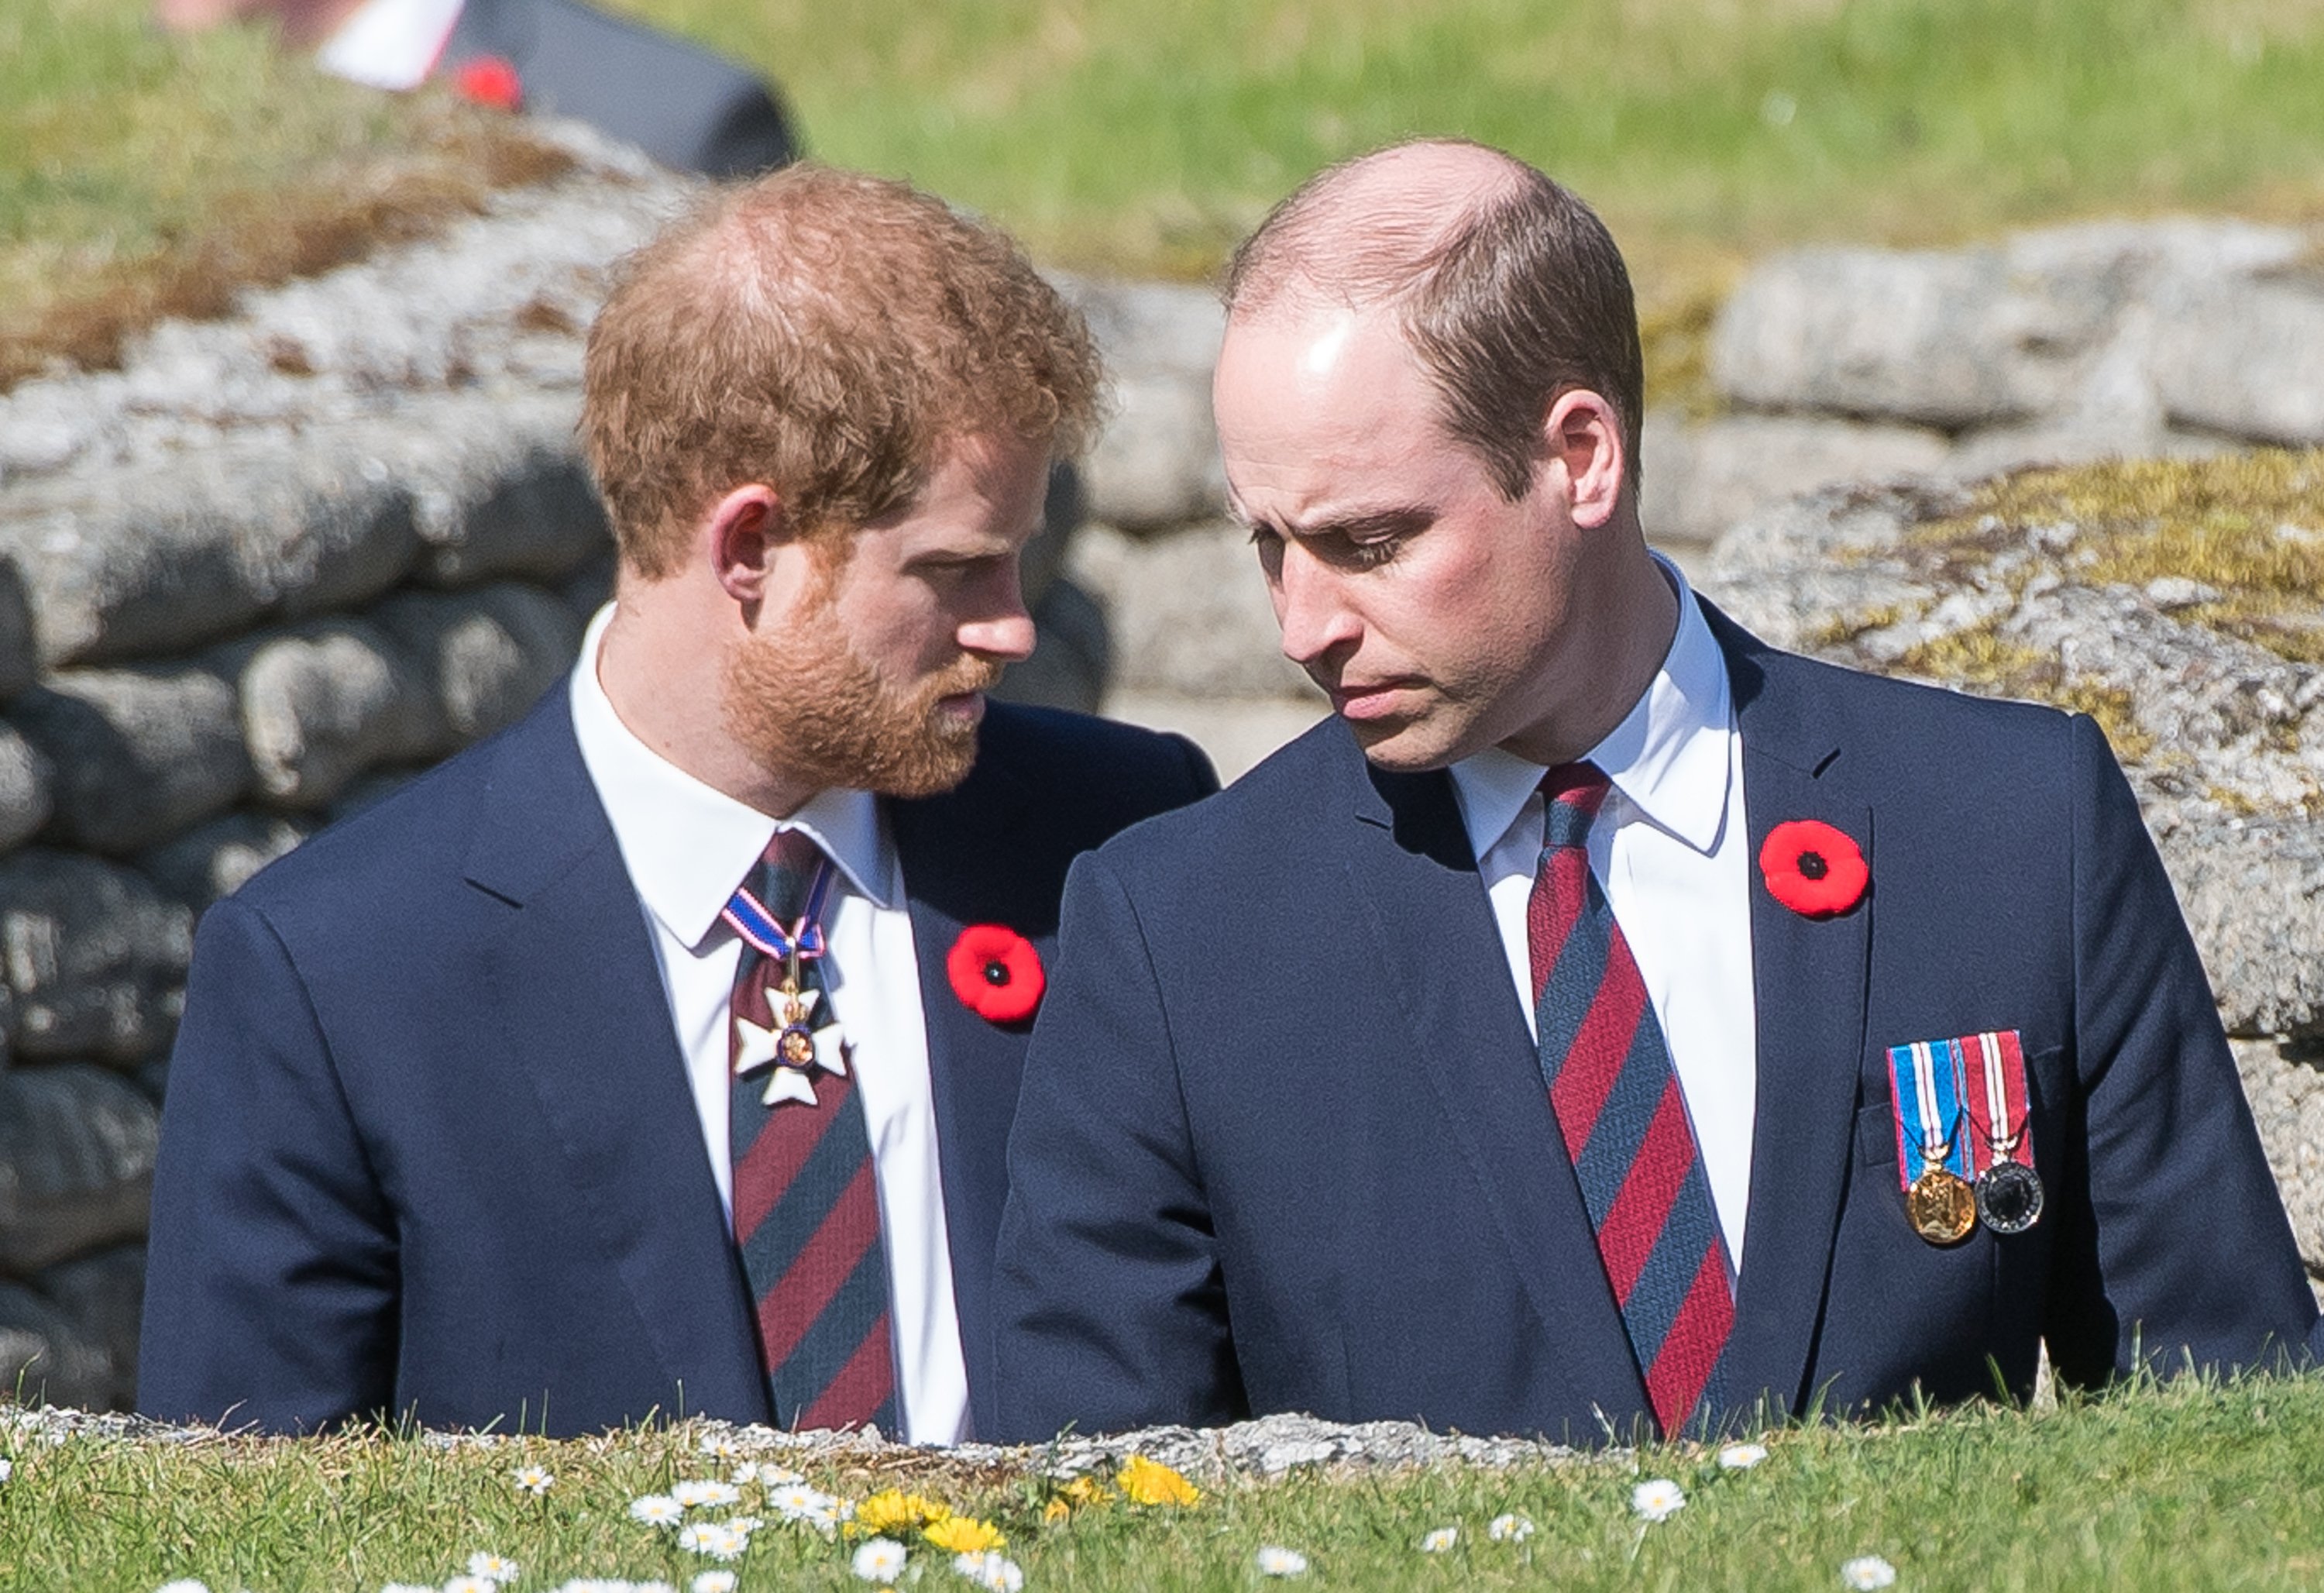 El príncipe William y el príncipe Harry en las conmemoraciones del centenario de la batalla de Vimy Ridge, el 9 de abril de 2017 en Lille, Francia. | Foto: Getty Images